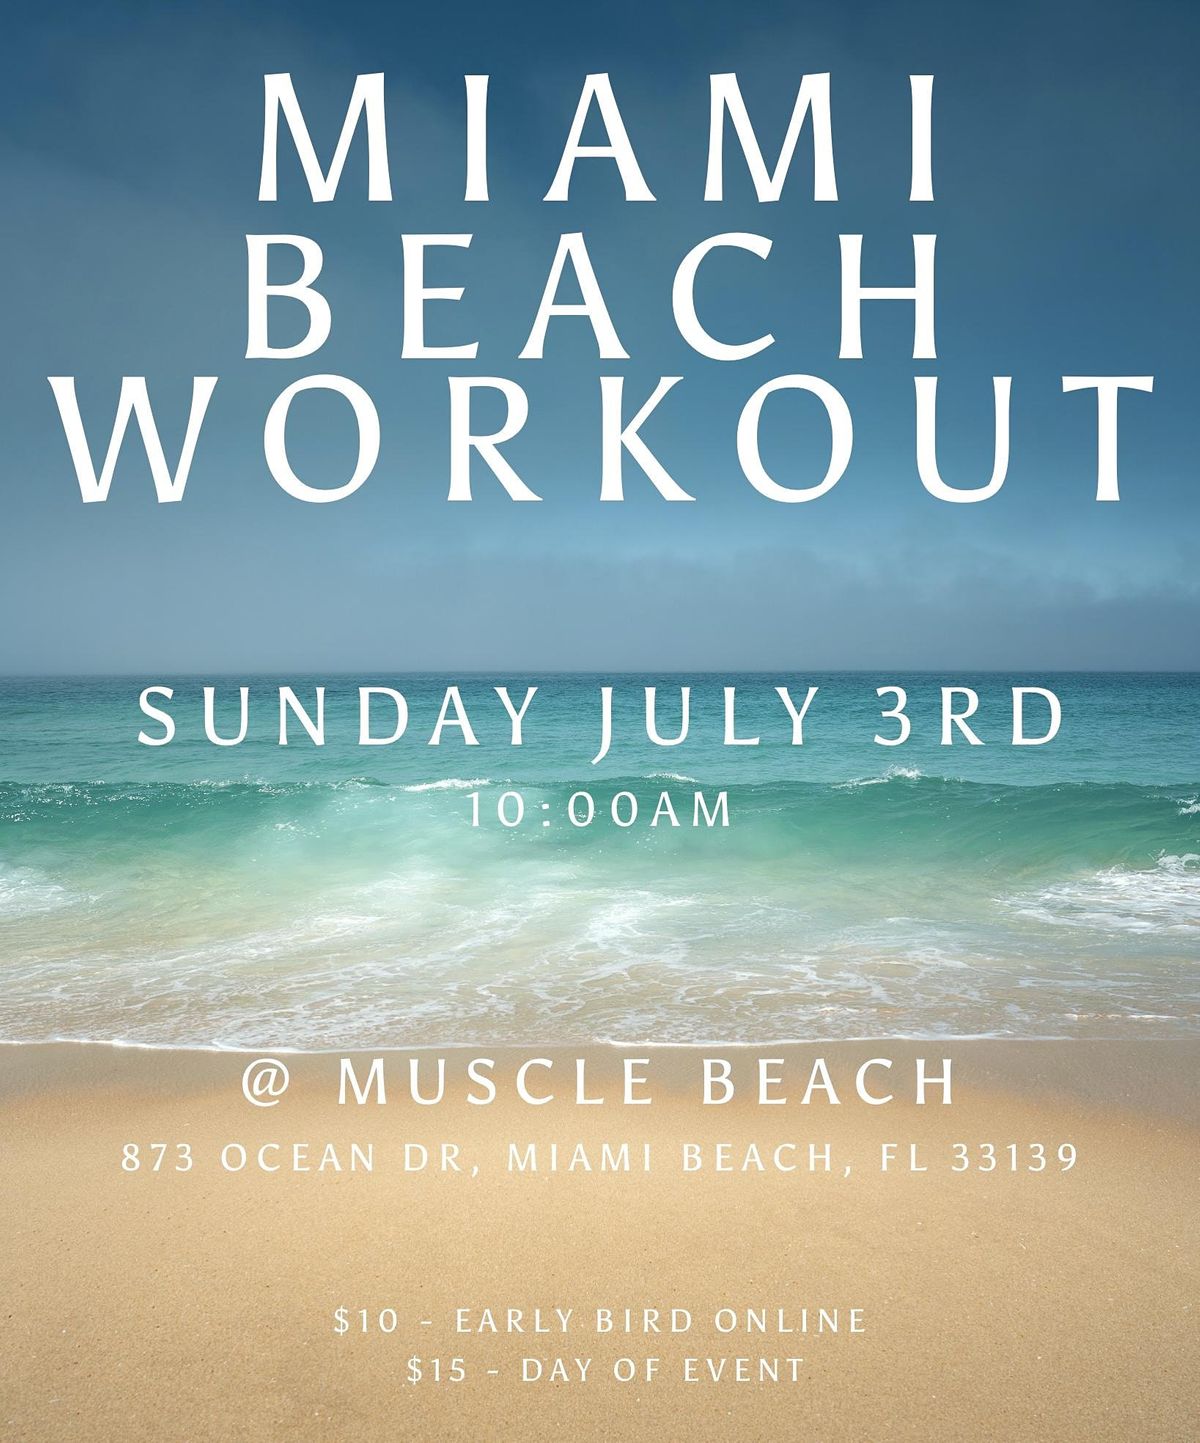 Miami Beach Workout